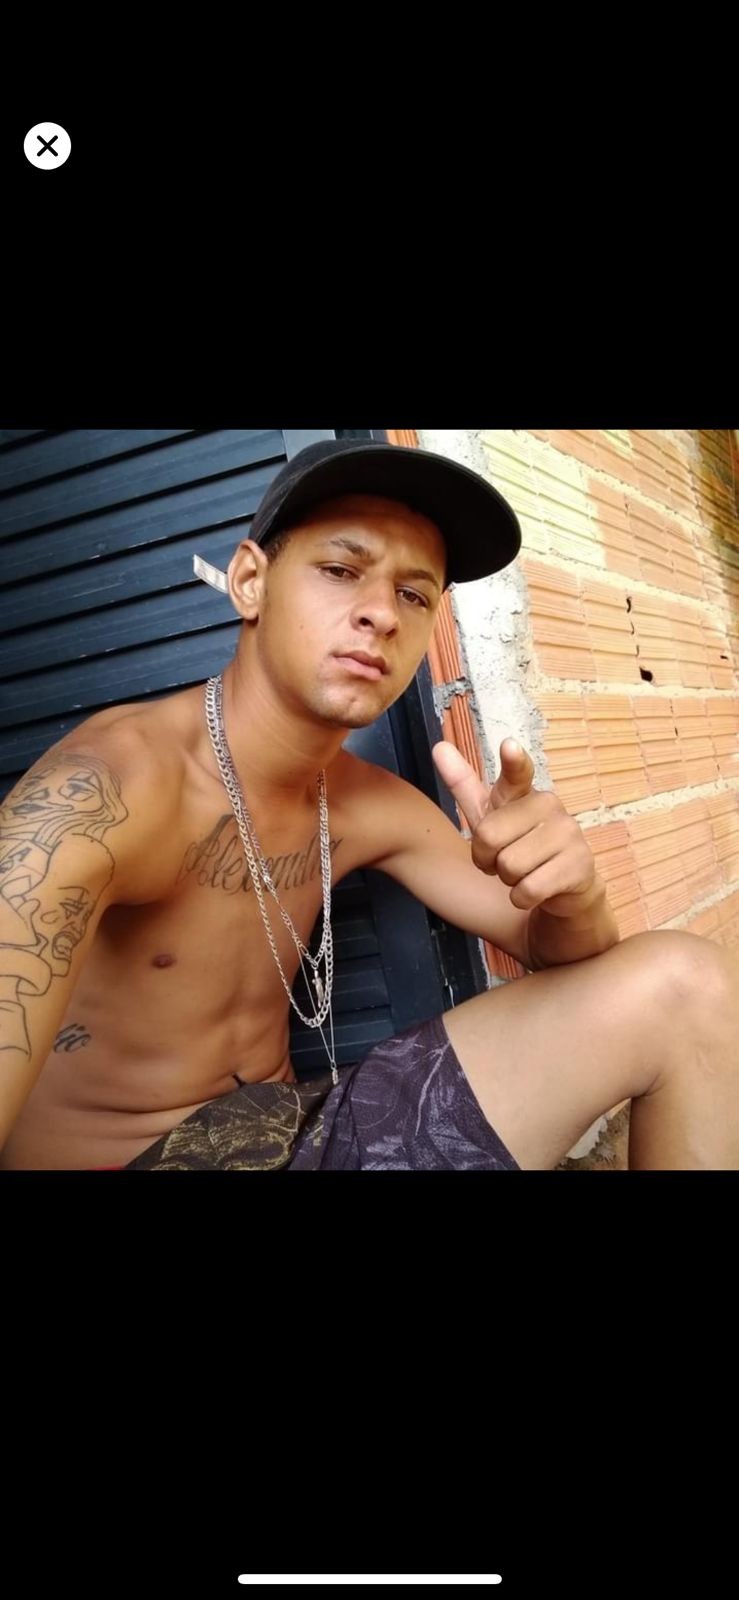 'Ele não merecia morrer do jeito que morreu', diz irmã de jovem morto a tiros em bar em Campinas